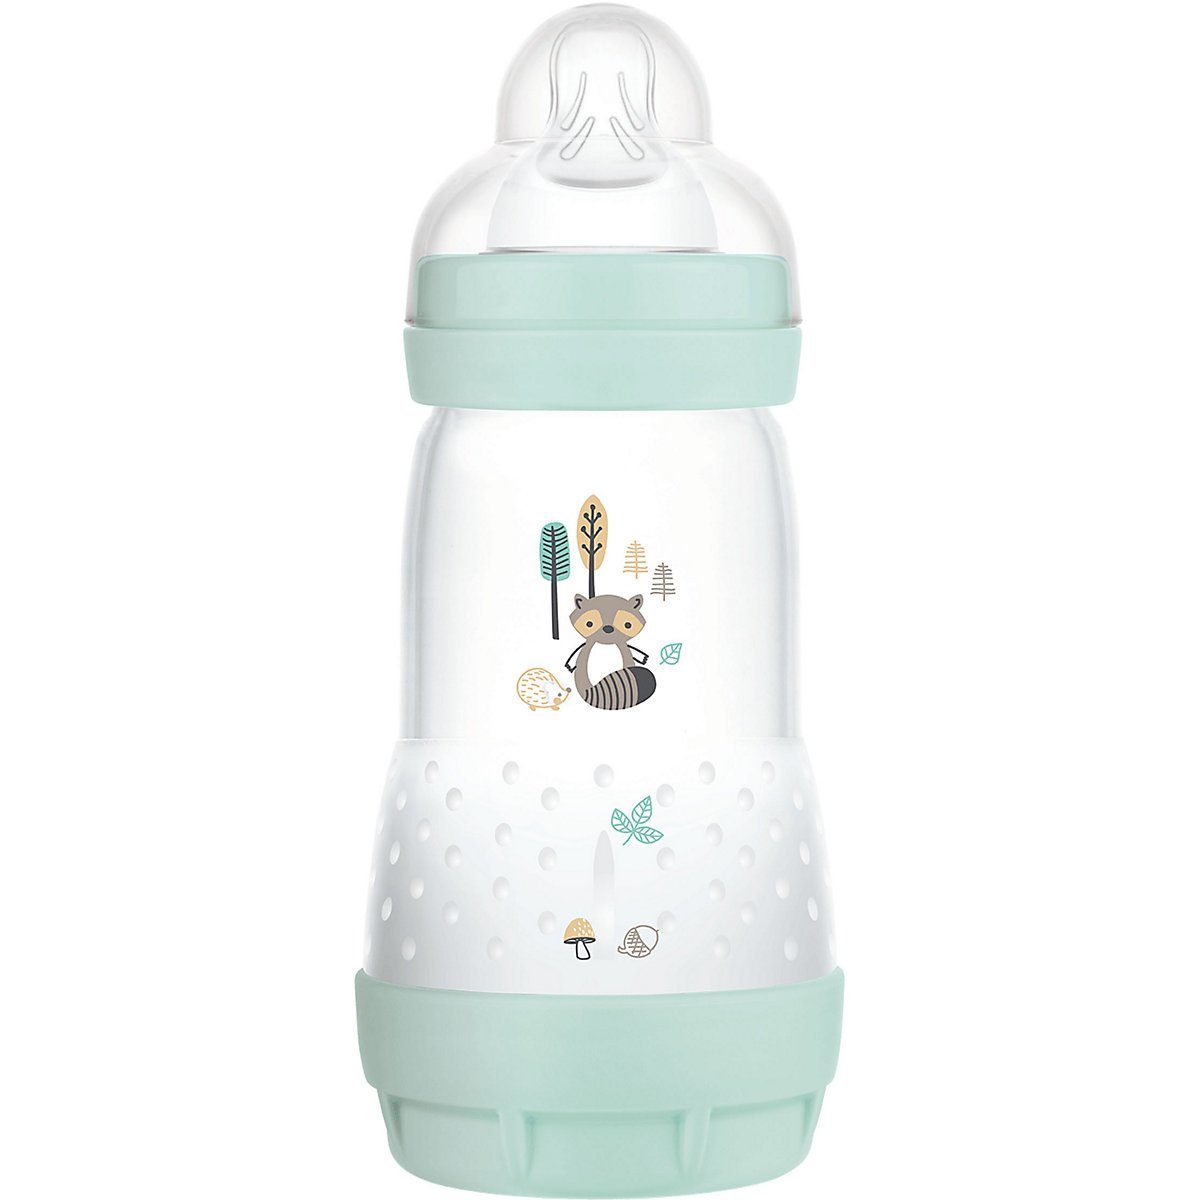 Kinder Babyernährung MAM Babyflasche MAM Easy Start Anti-Colic Elements, 260 ml,